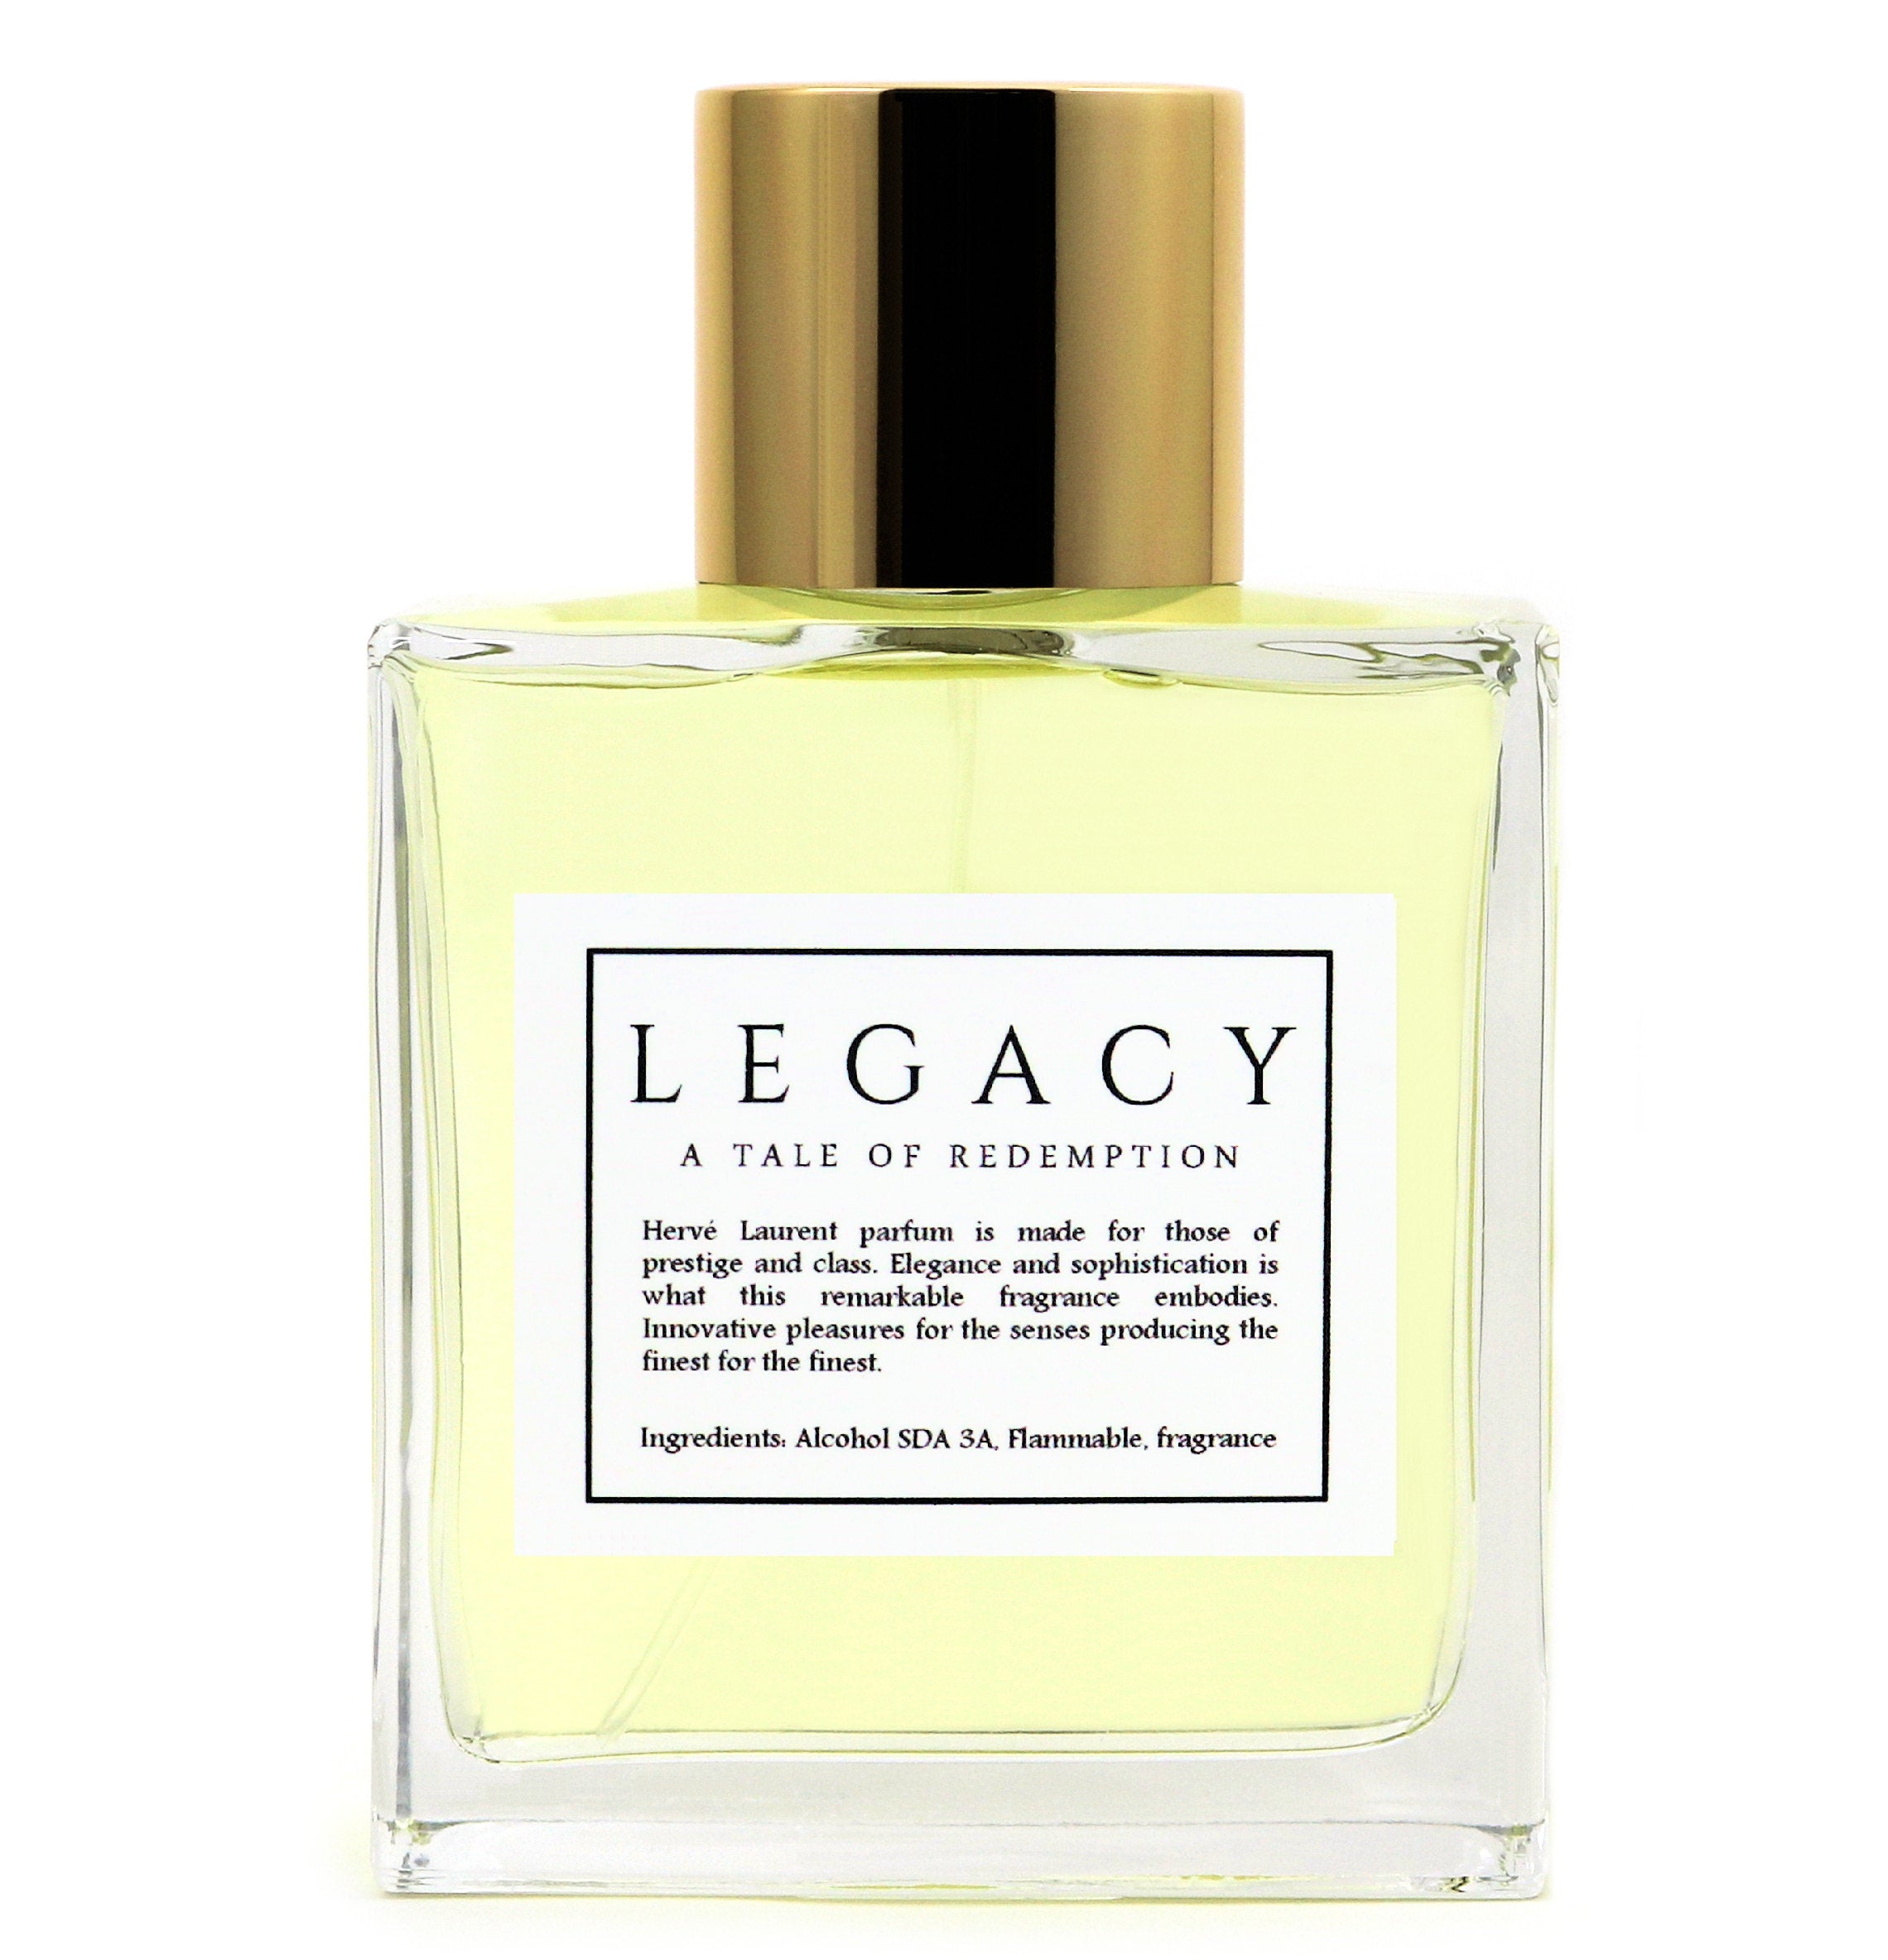 Herve Laurent, Perfume, Parfum, High End Luxury, Designer Fragrance, Fashion Fragrance, Men Fragrance